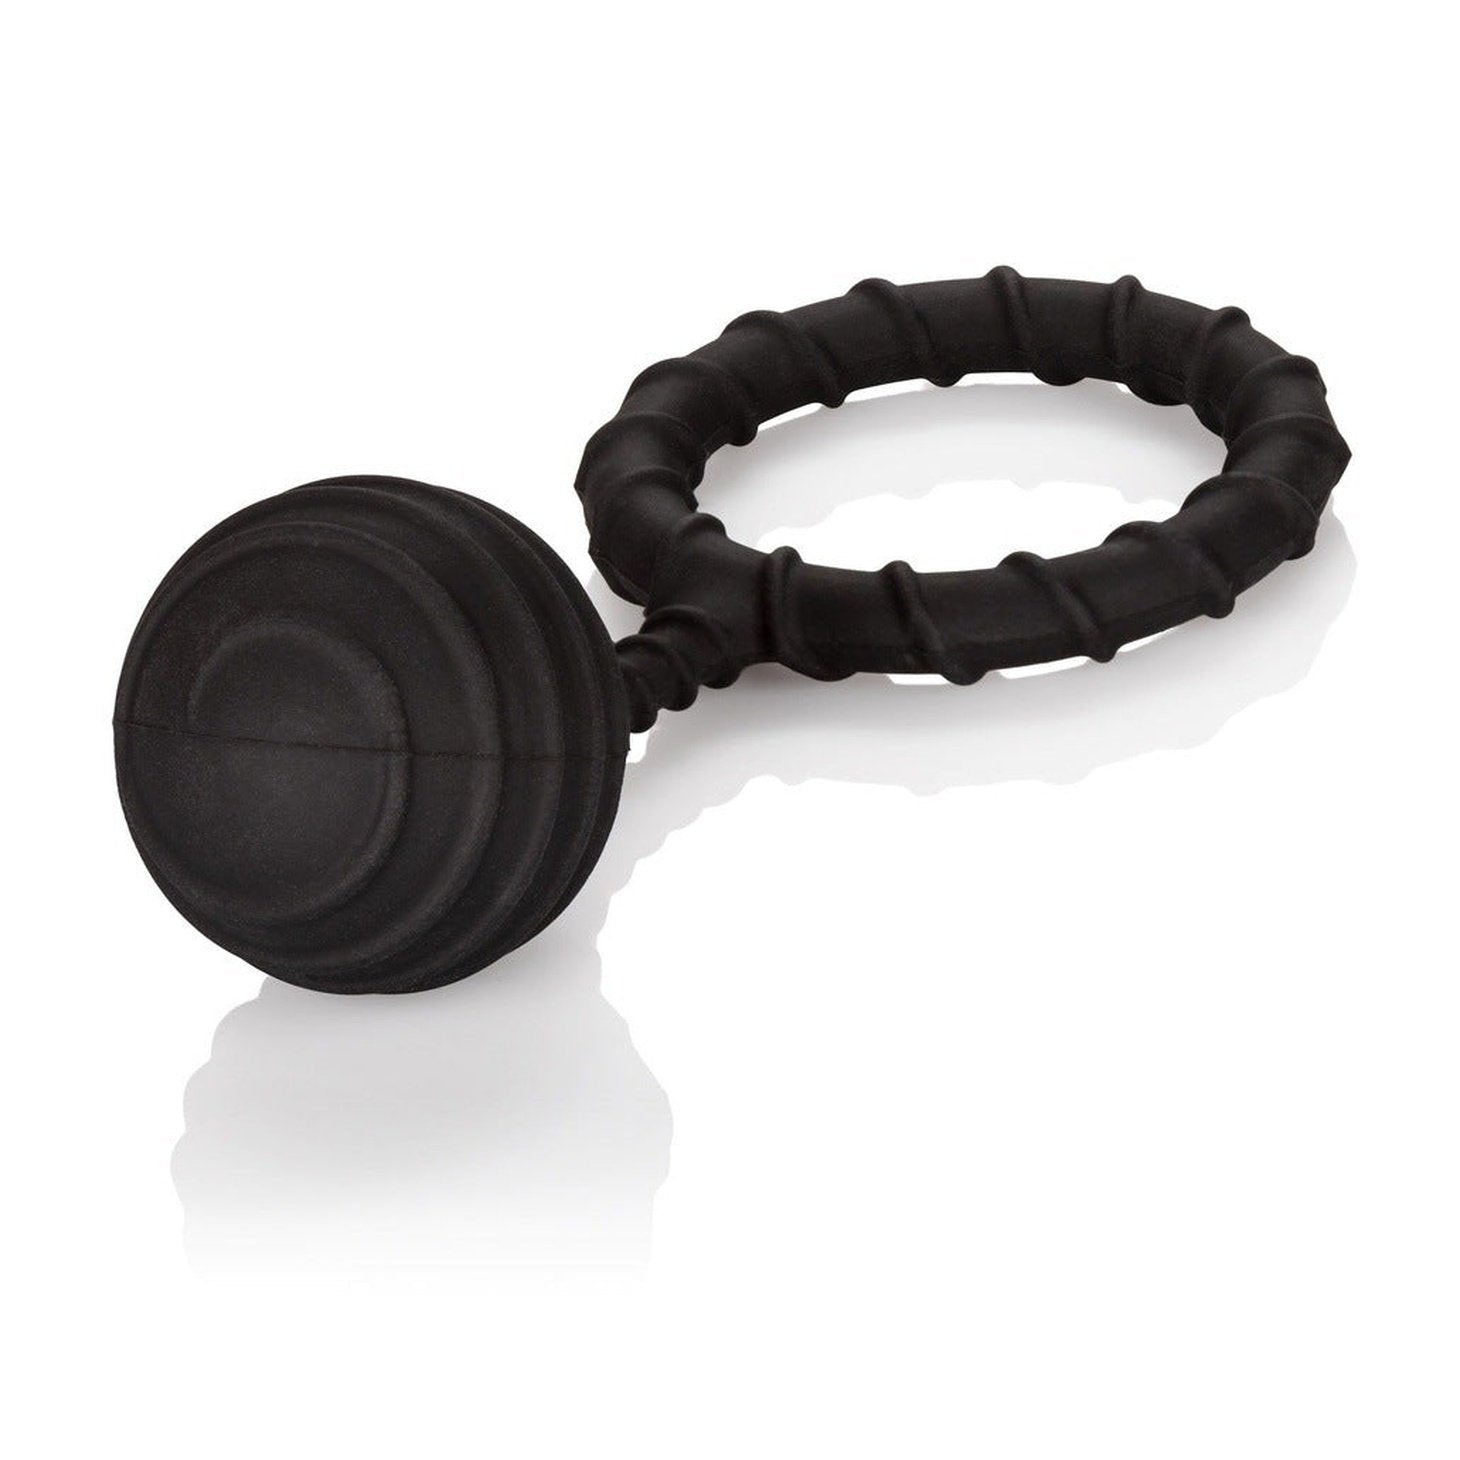 Weighted Ring Extra Large - Anello fallico in 100% puro silicone, elastico e confortevole - Nero, Peso 110 gr.